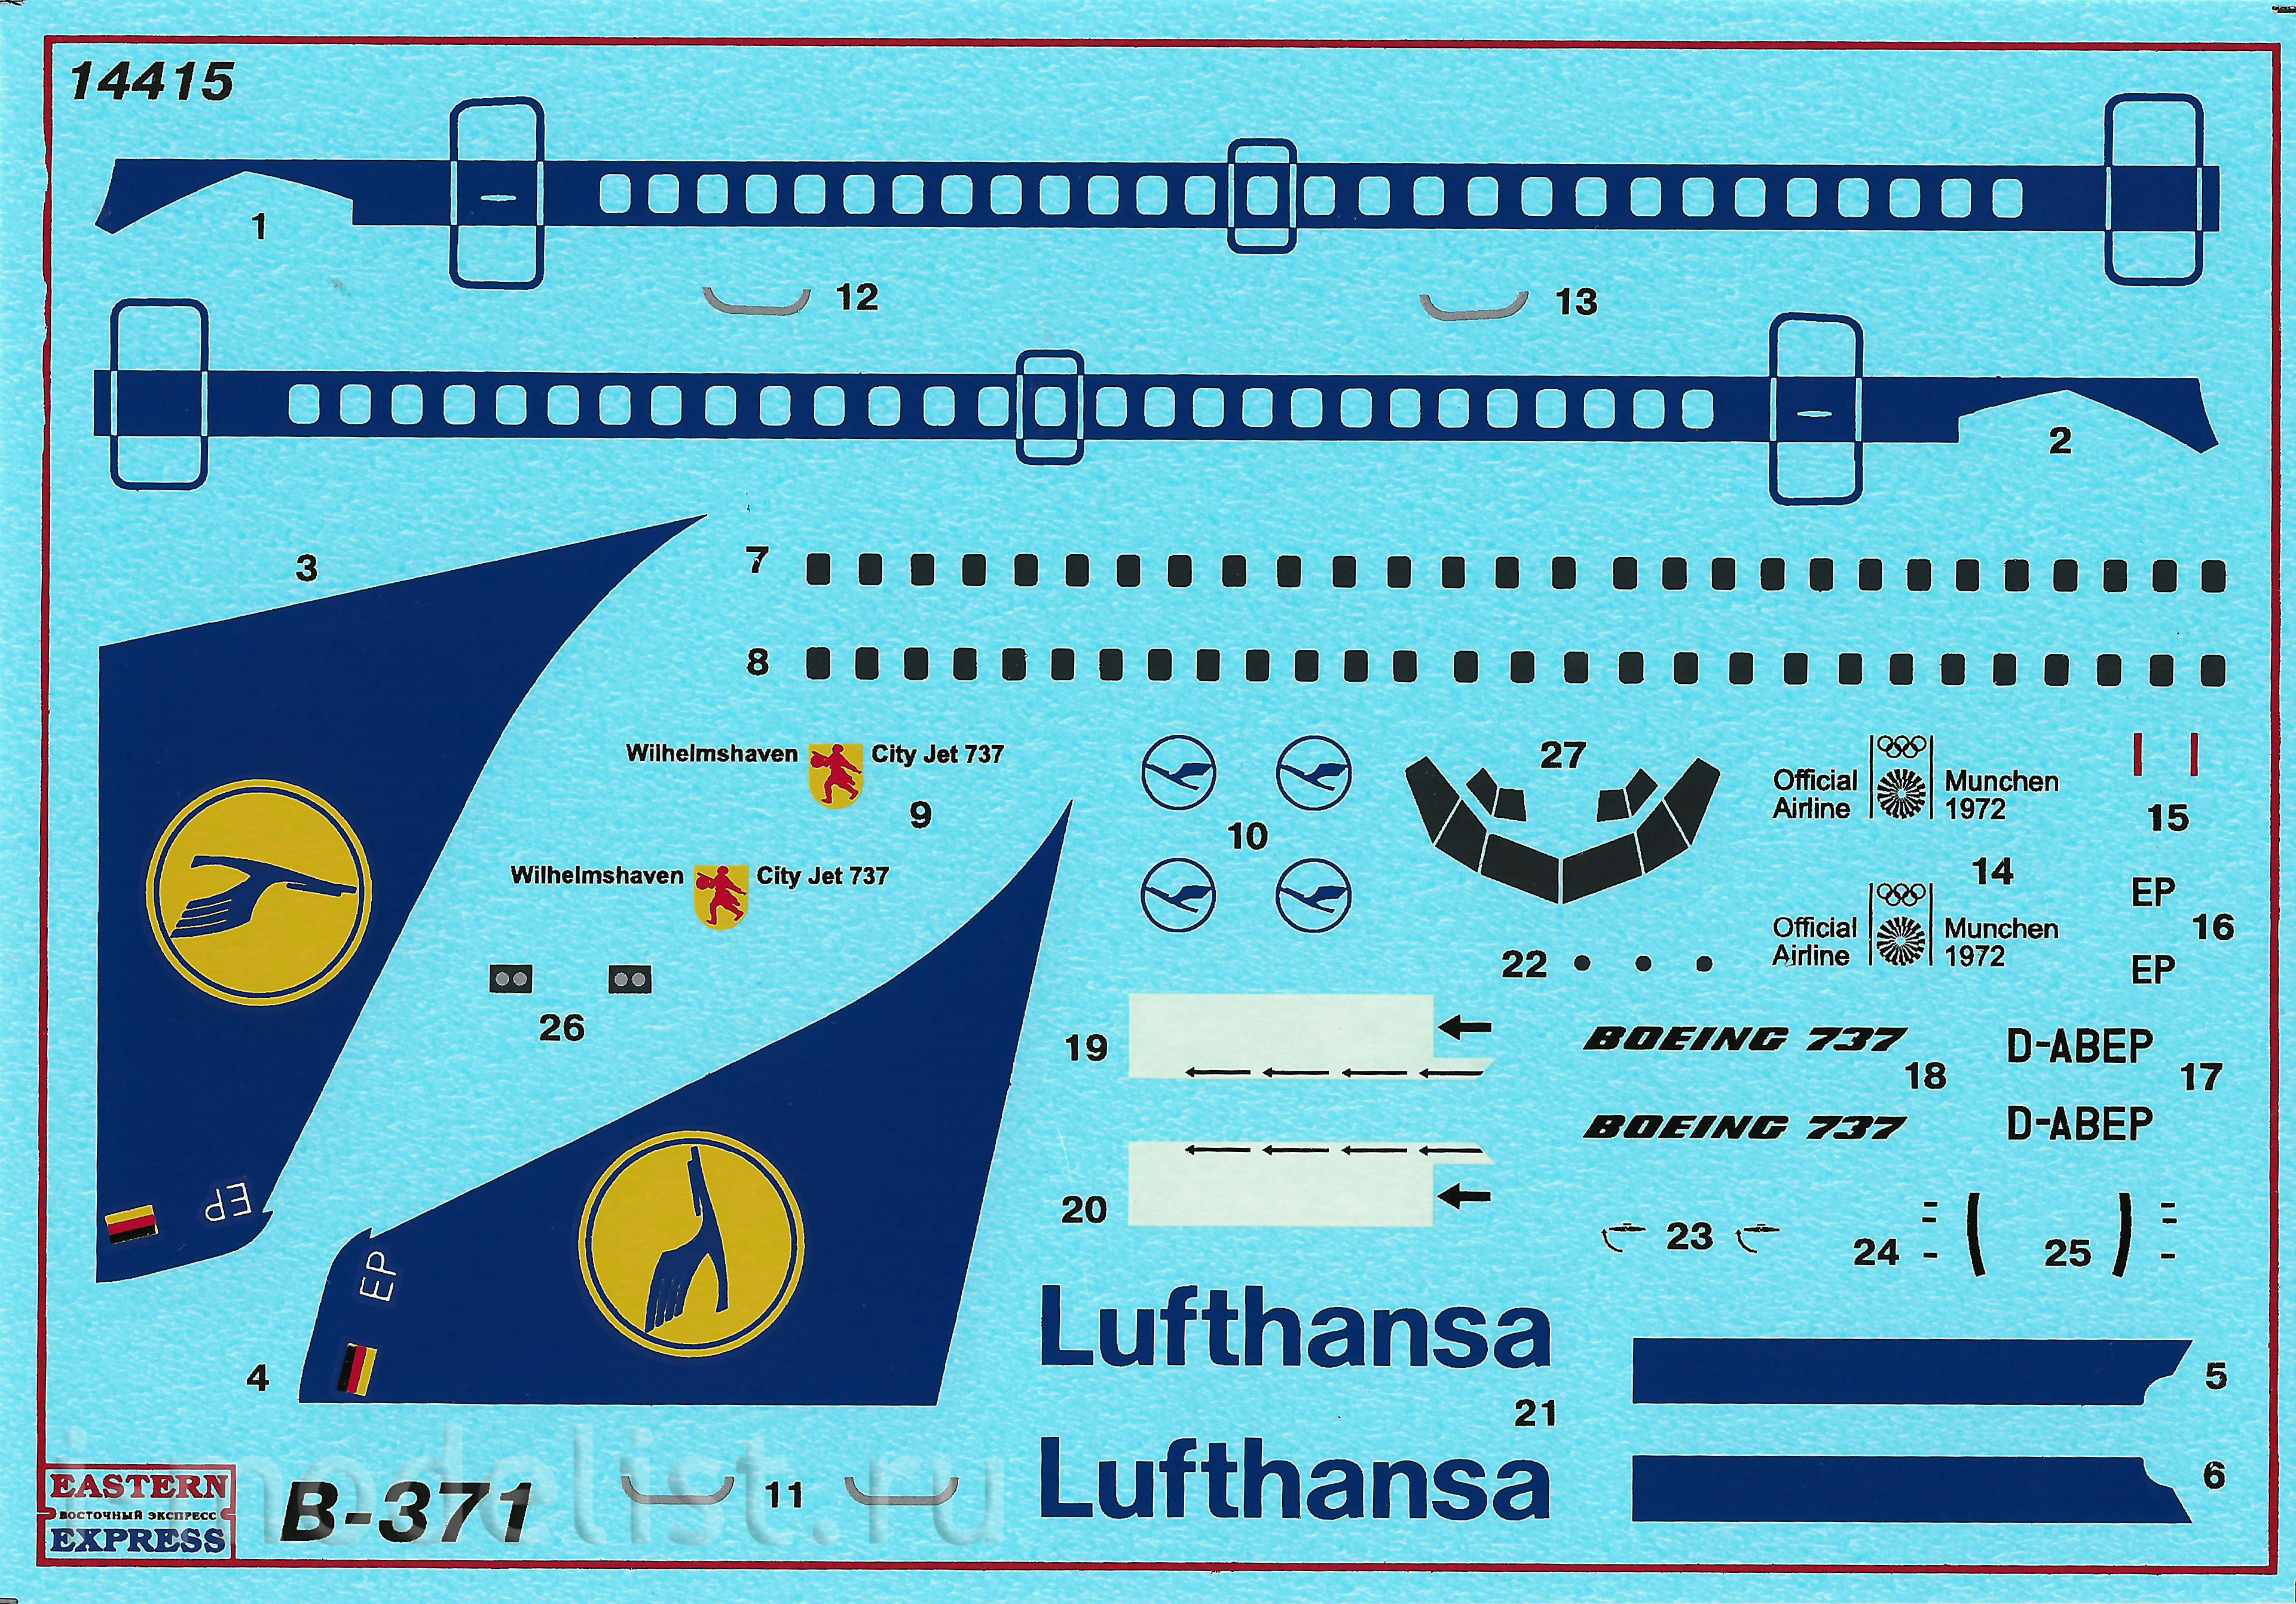 14415 Восточный экспресс 1/144 Б-731 Авиалайнер Lufthansa